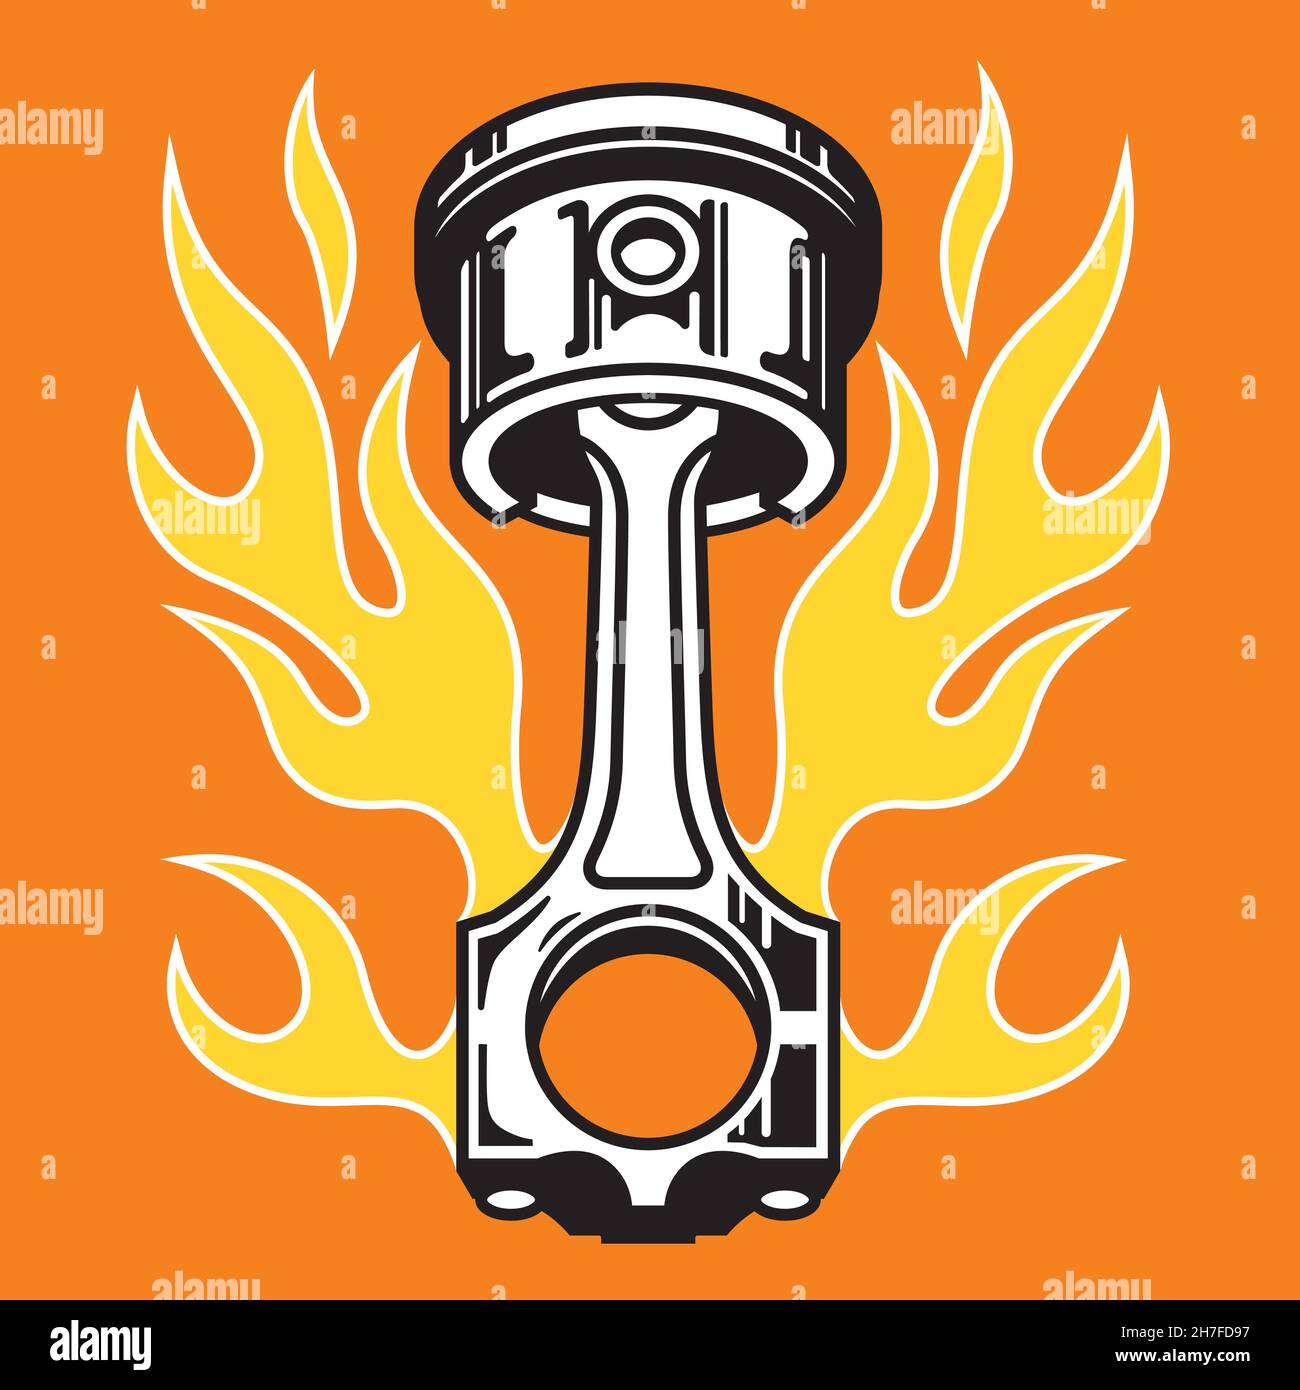 Kolben mit Flammen heißen Stange Auto Teil Abzeichen oder Emblem. Vektordarstellung eines Kolbens, umgeben von klassischen heißen Stabstiften, die Flammen aufstempeln. Stock Vektor